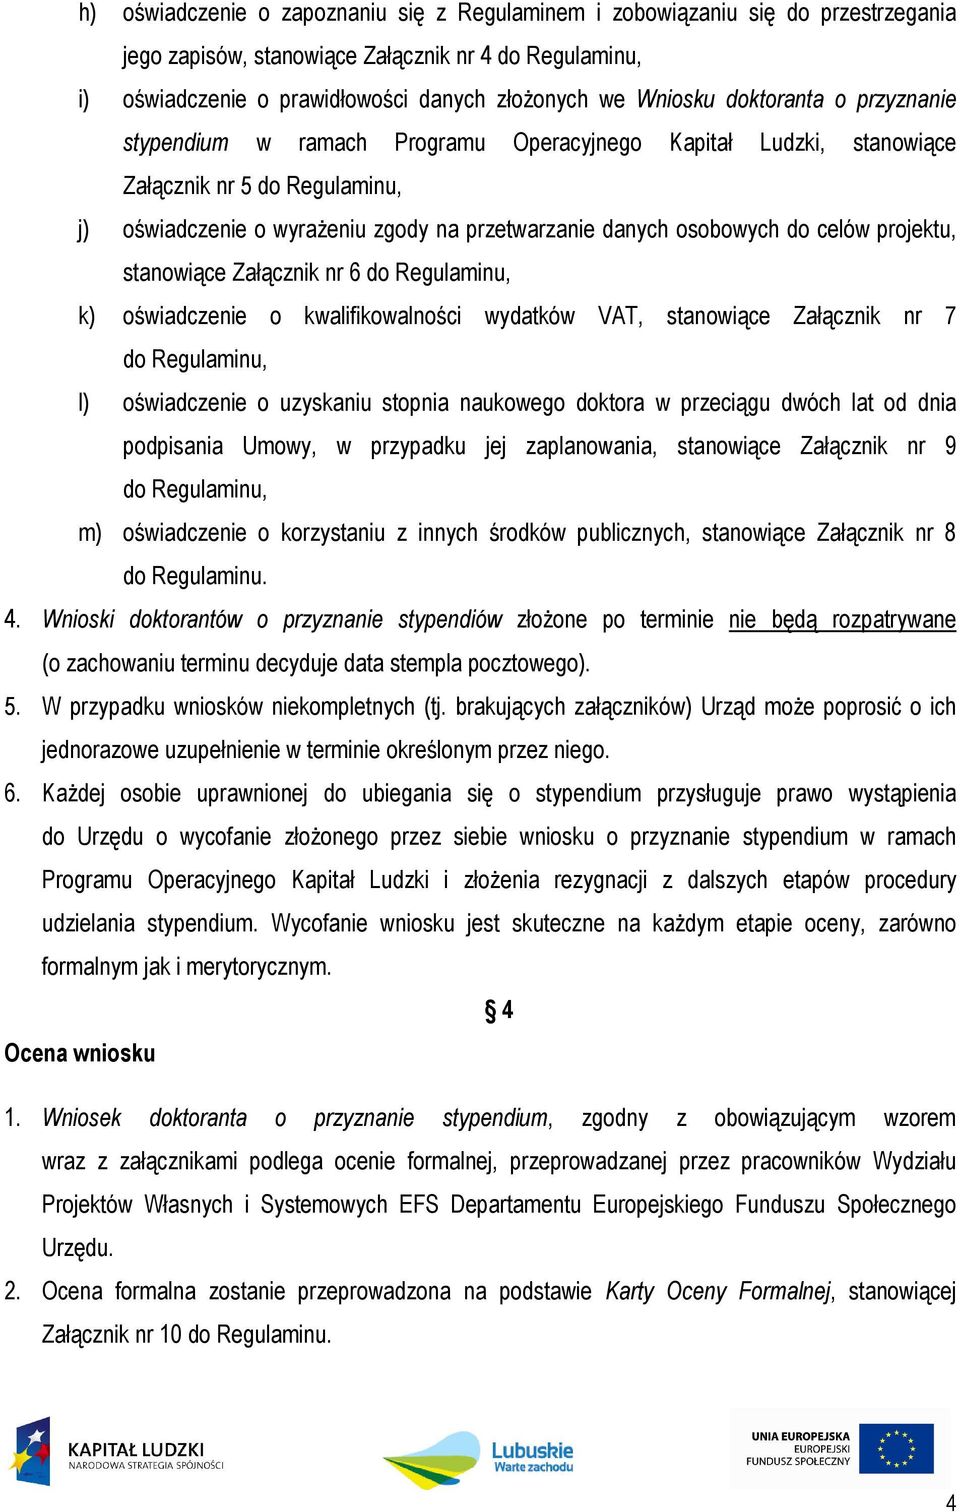 projektu, stanowiące Załącznik nr 6 do Regulaminu, k) oświadczenie o kwalifikowalności wydatków VAT, stanowiące Załącznik nr 7 do Regulaminu, l) oświadczenie o uzyskaniu stopnia naukowego doktora w